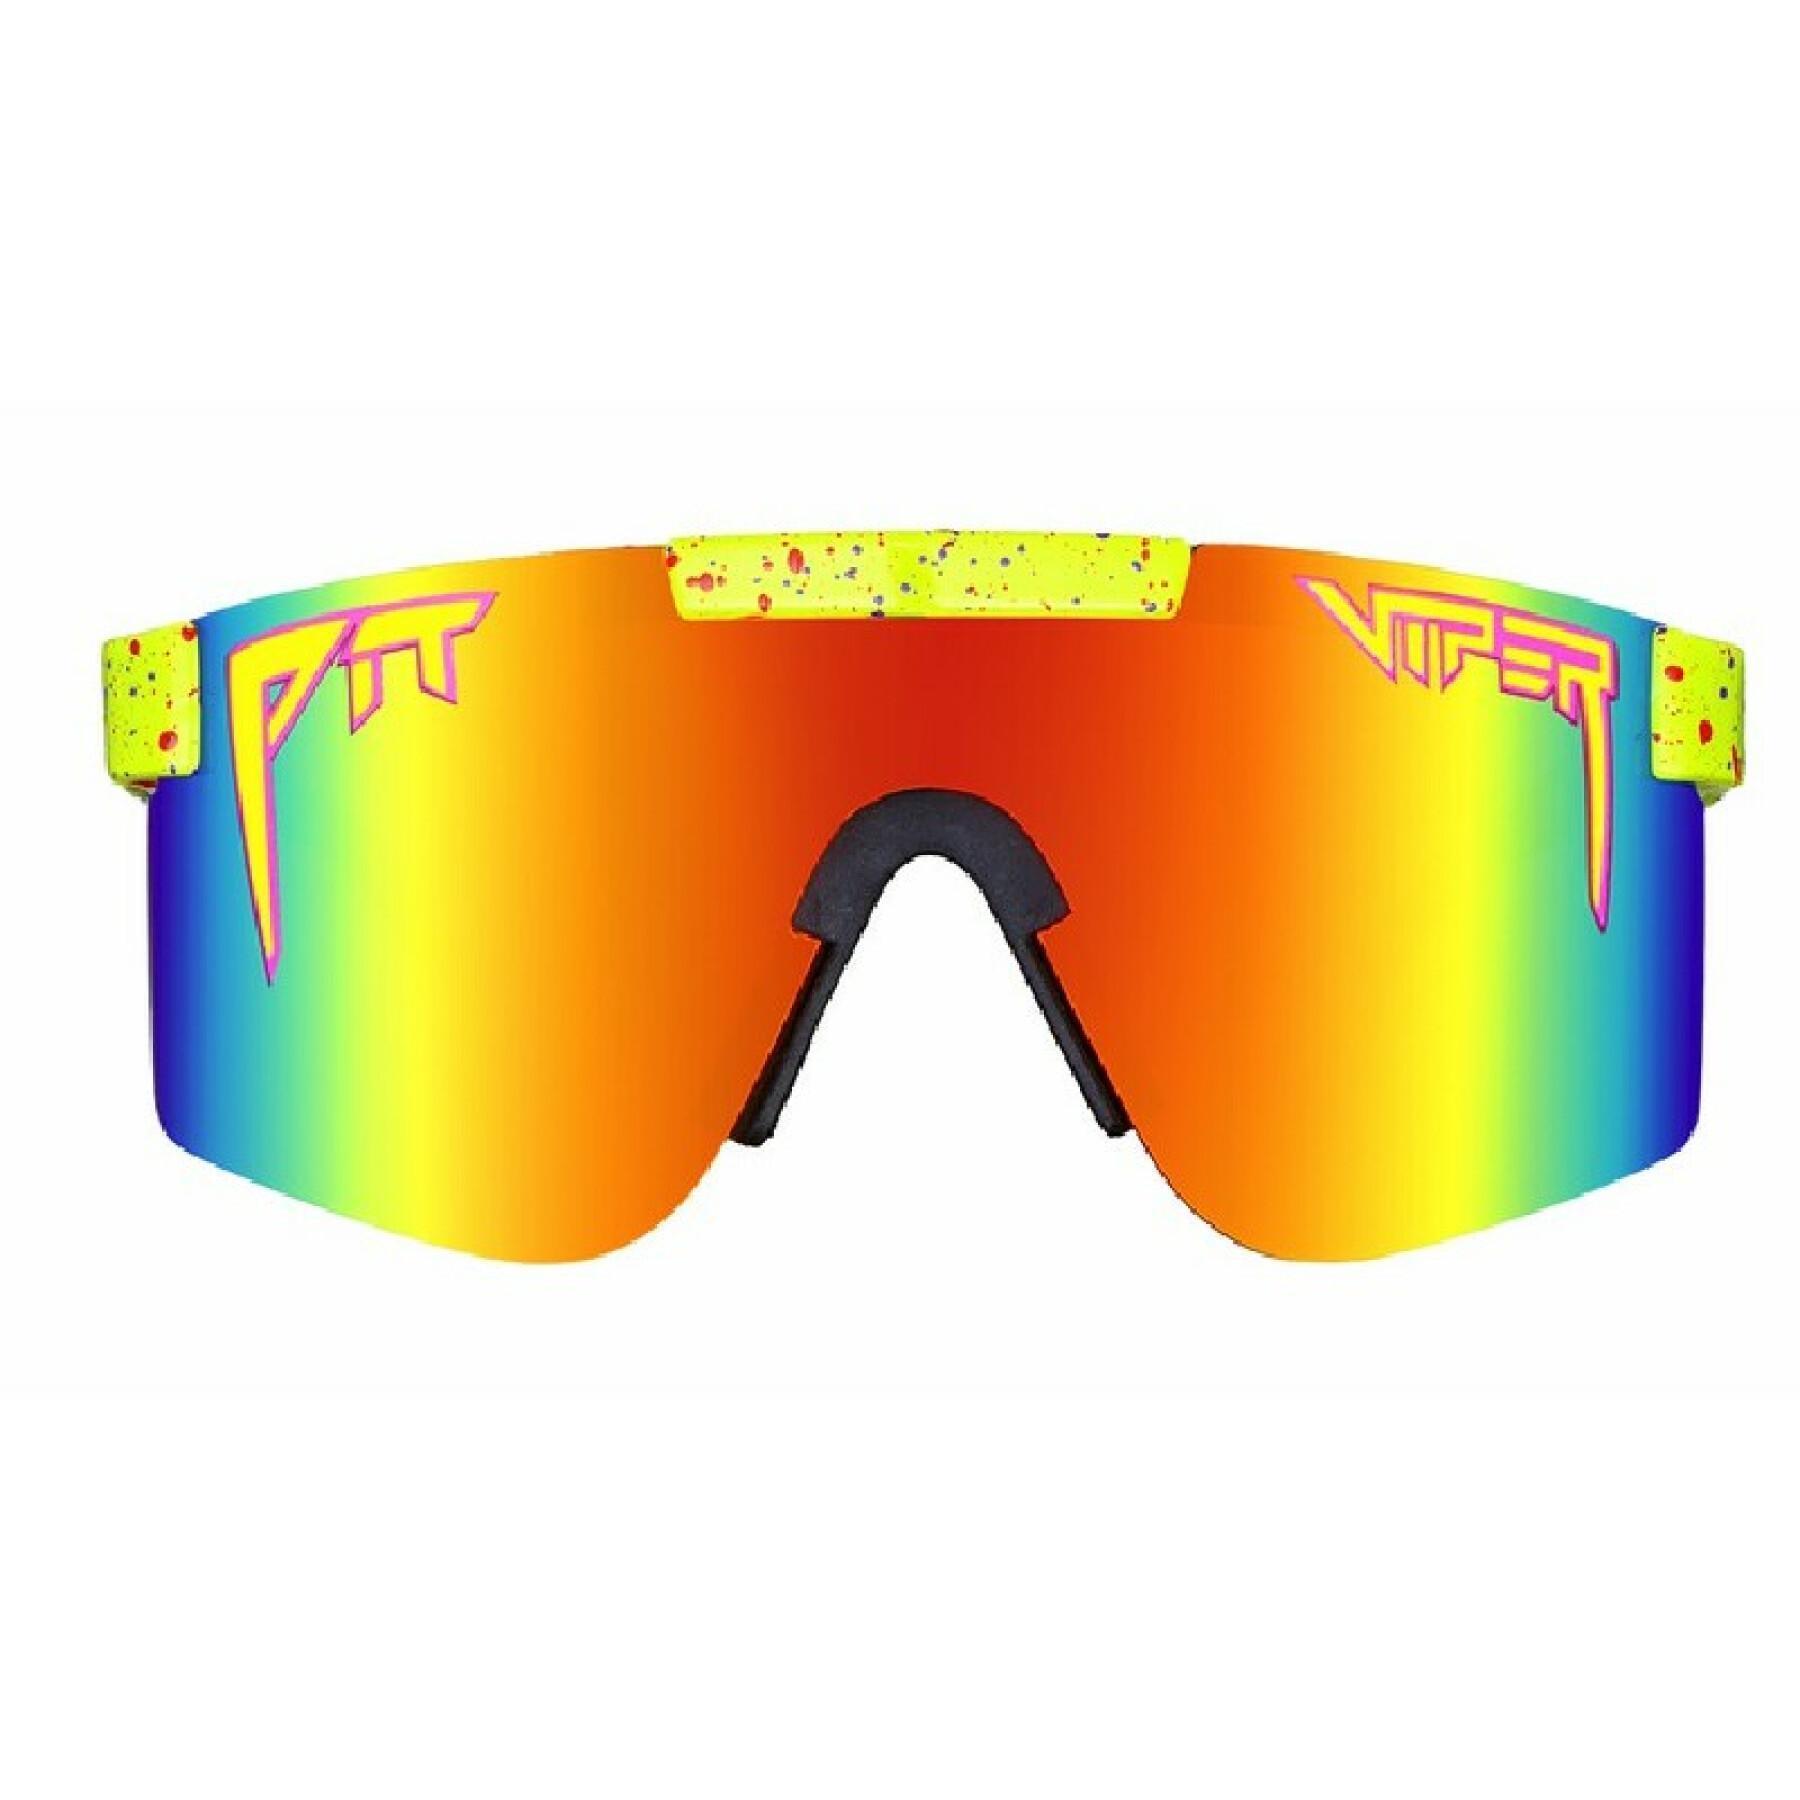 Original polarized sunglasses Pit Viper The 1993